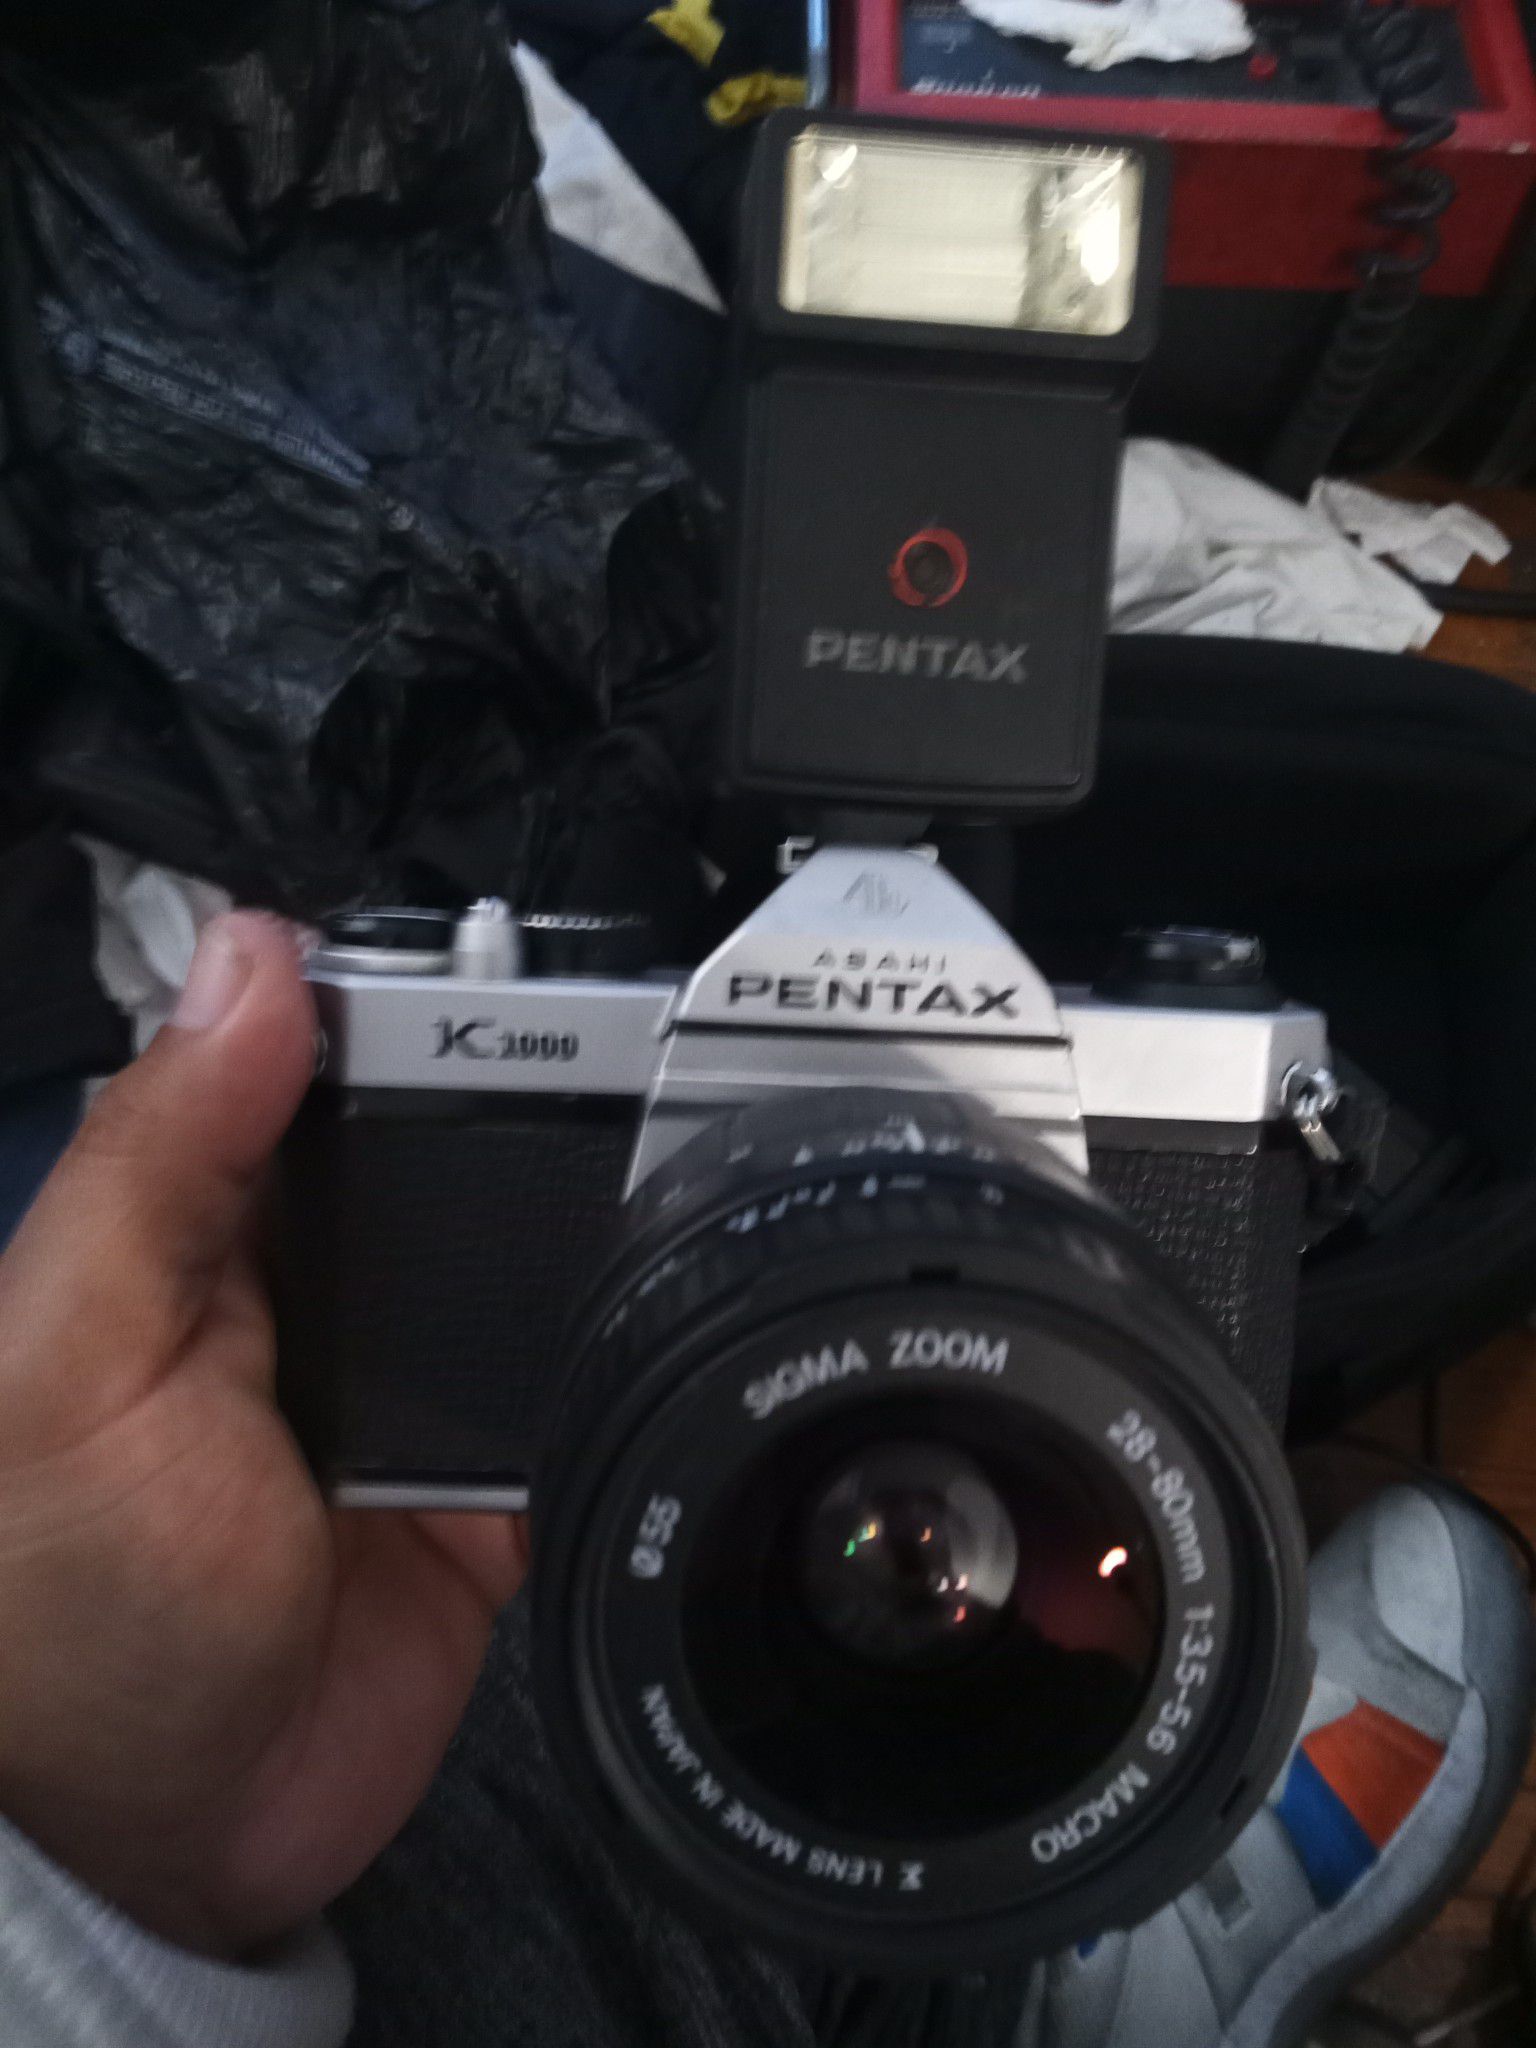 Pentax k1000 camera